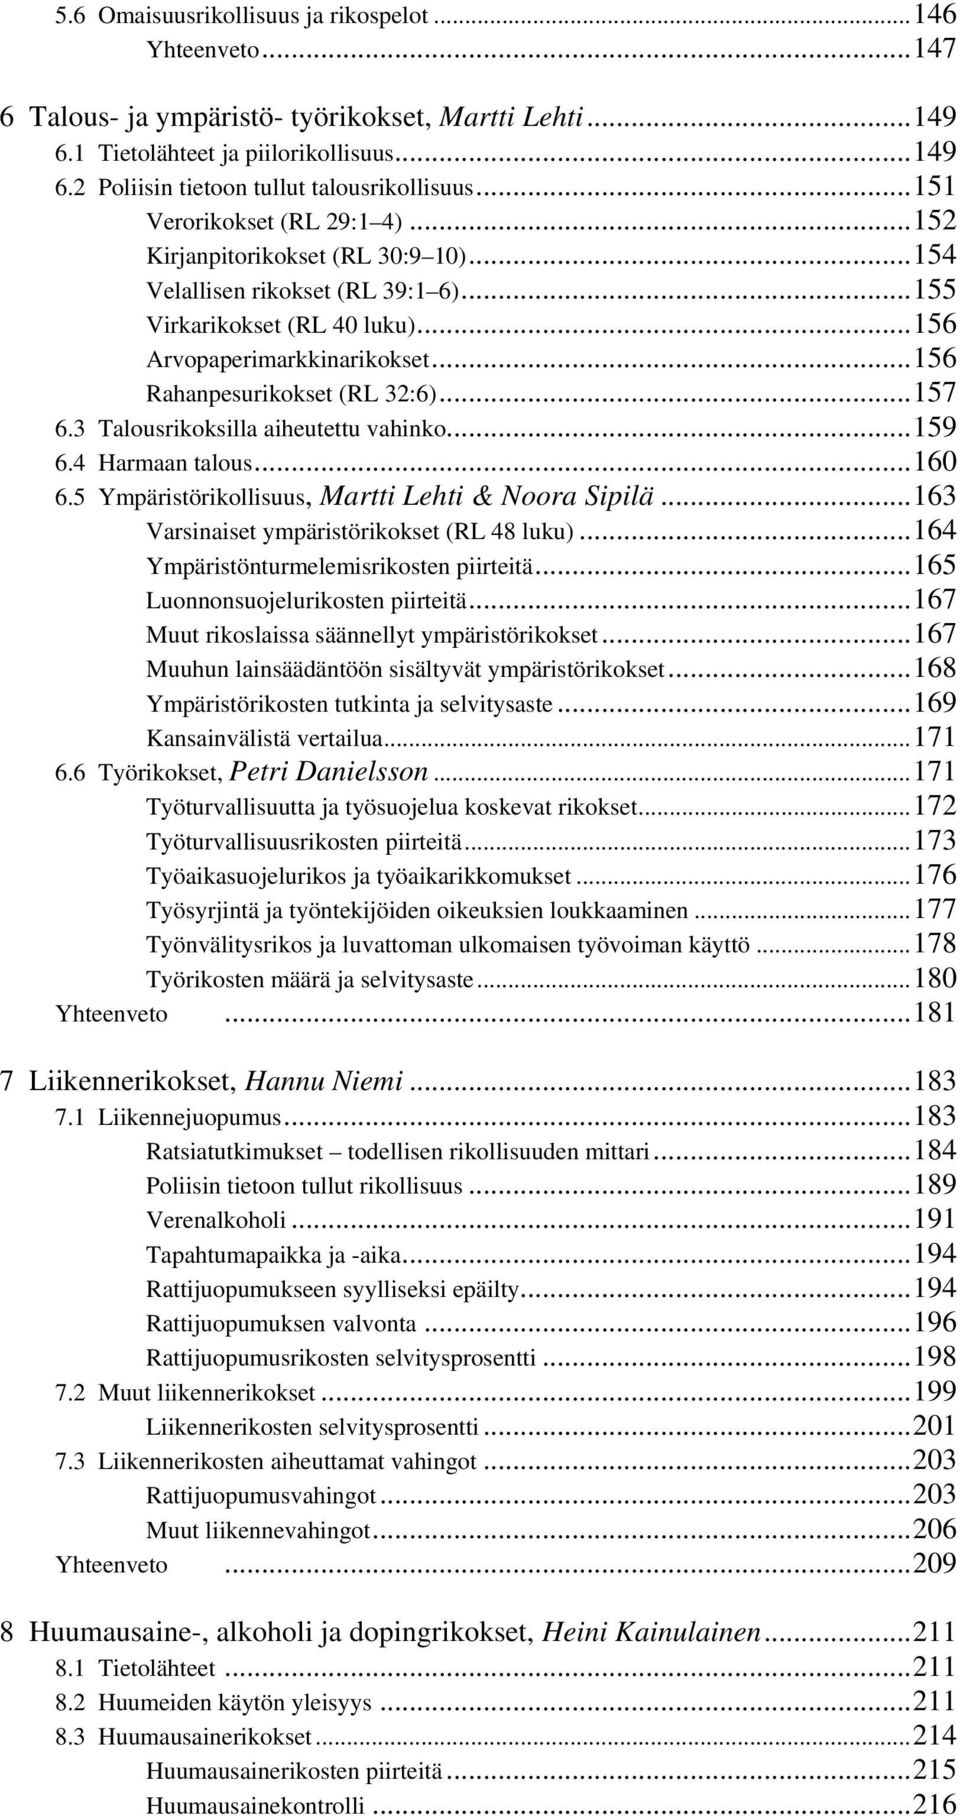 ..156 Rahanpesurikokset (RL 32:6)...157 6.3 Talousrikoksilla aiheutettu vahinko...159 6.4 Harmaan talous...160 6.5 Ympäristörikollisuus, Martti Lehti & Noora Sipilä.